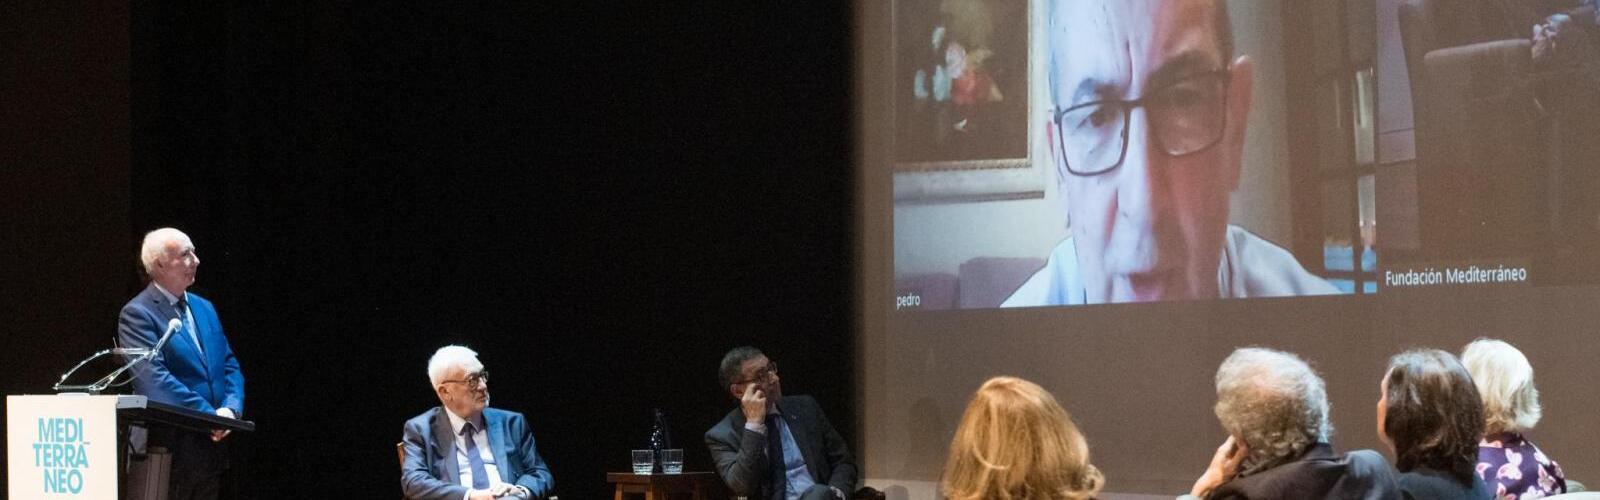 El escritor Pedro Calatrava gana el I Premio de Novela Fundación Mediterráneo por su obra 'El hombre azul'